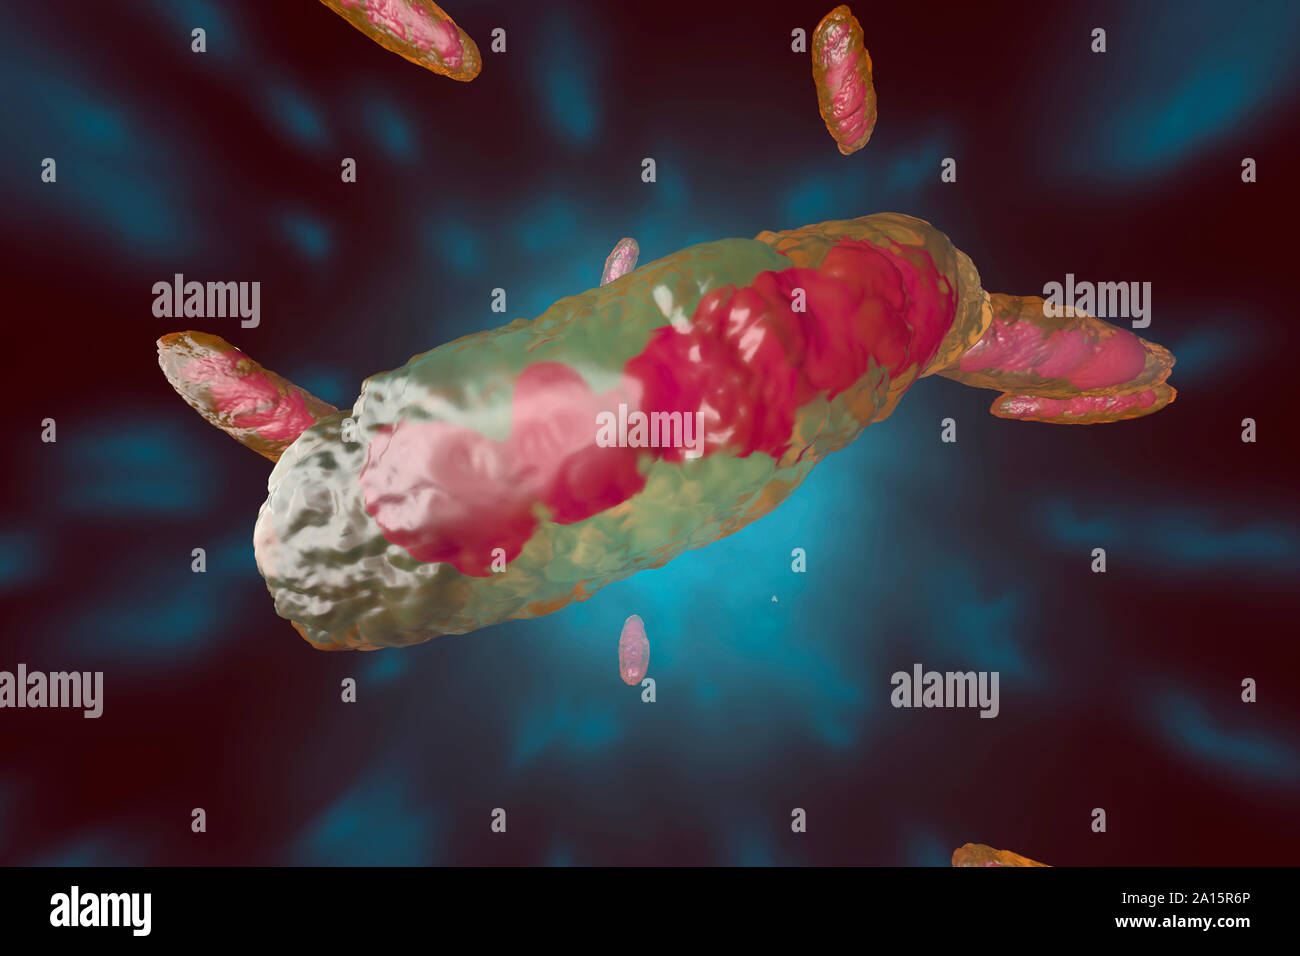 Illustration en rendu 3D, la visualisation d'une mitochondrie anatomiquement corrects Banque D'Images